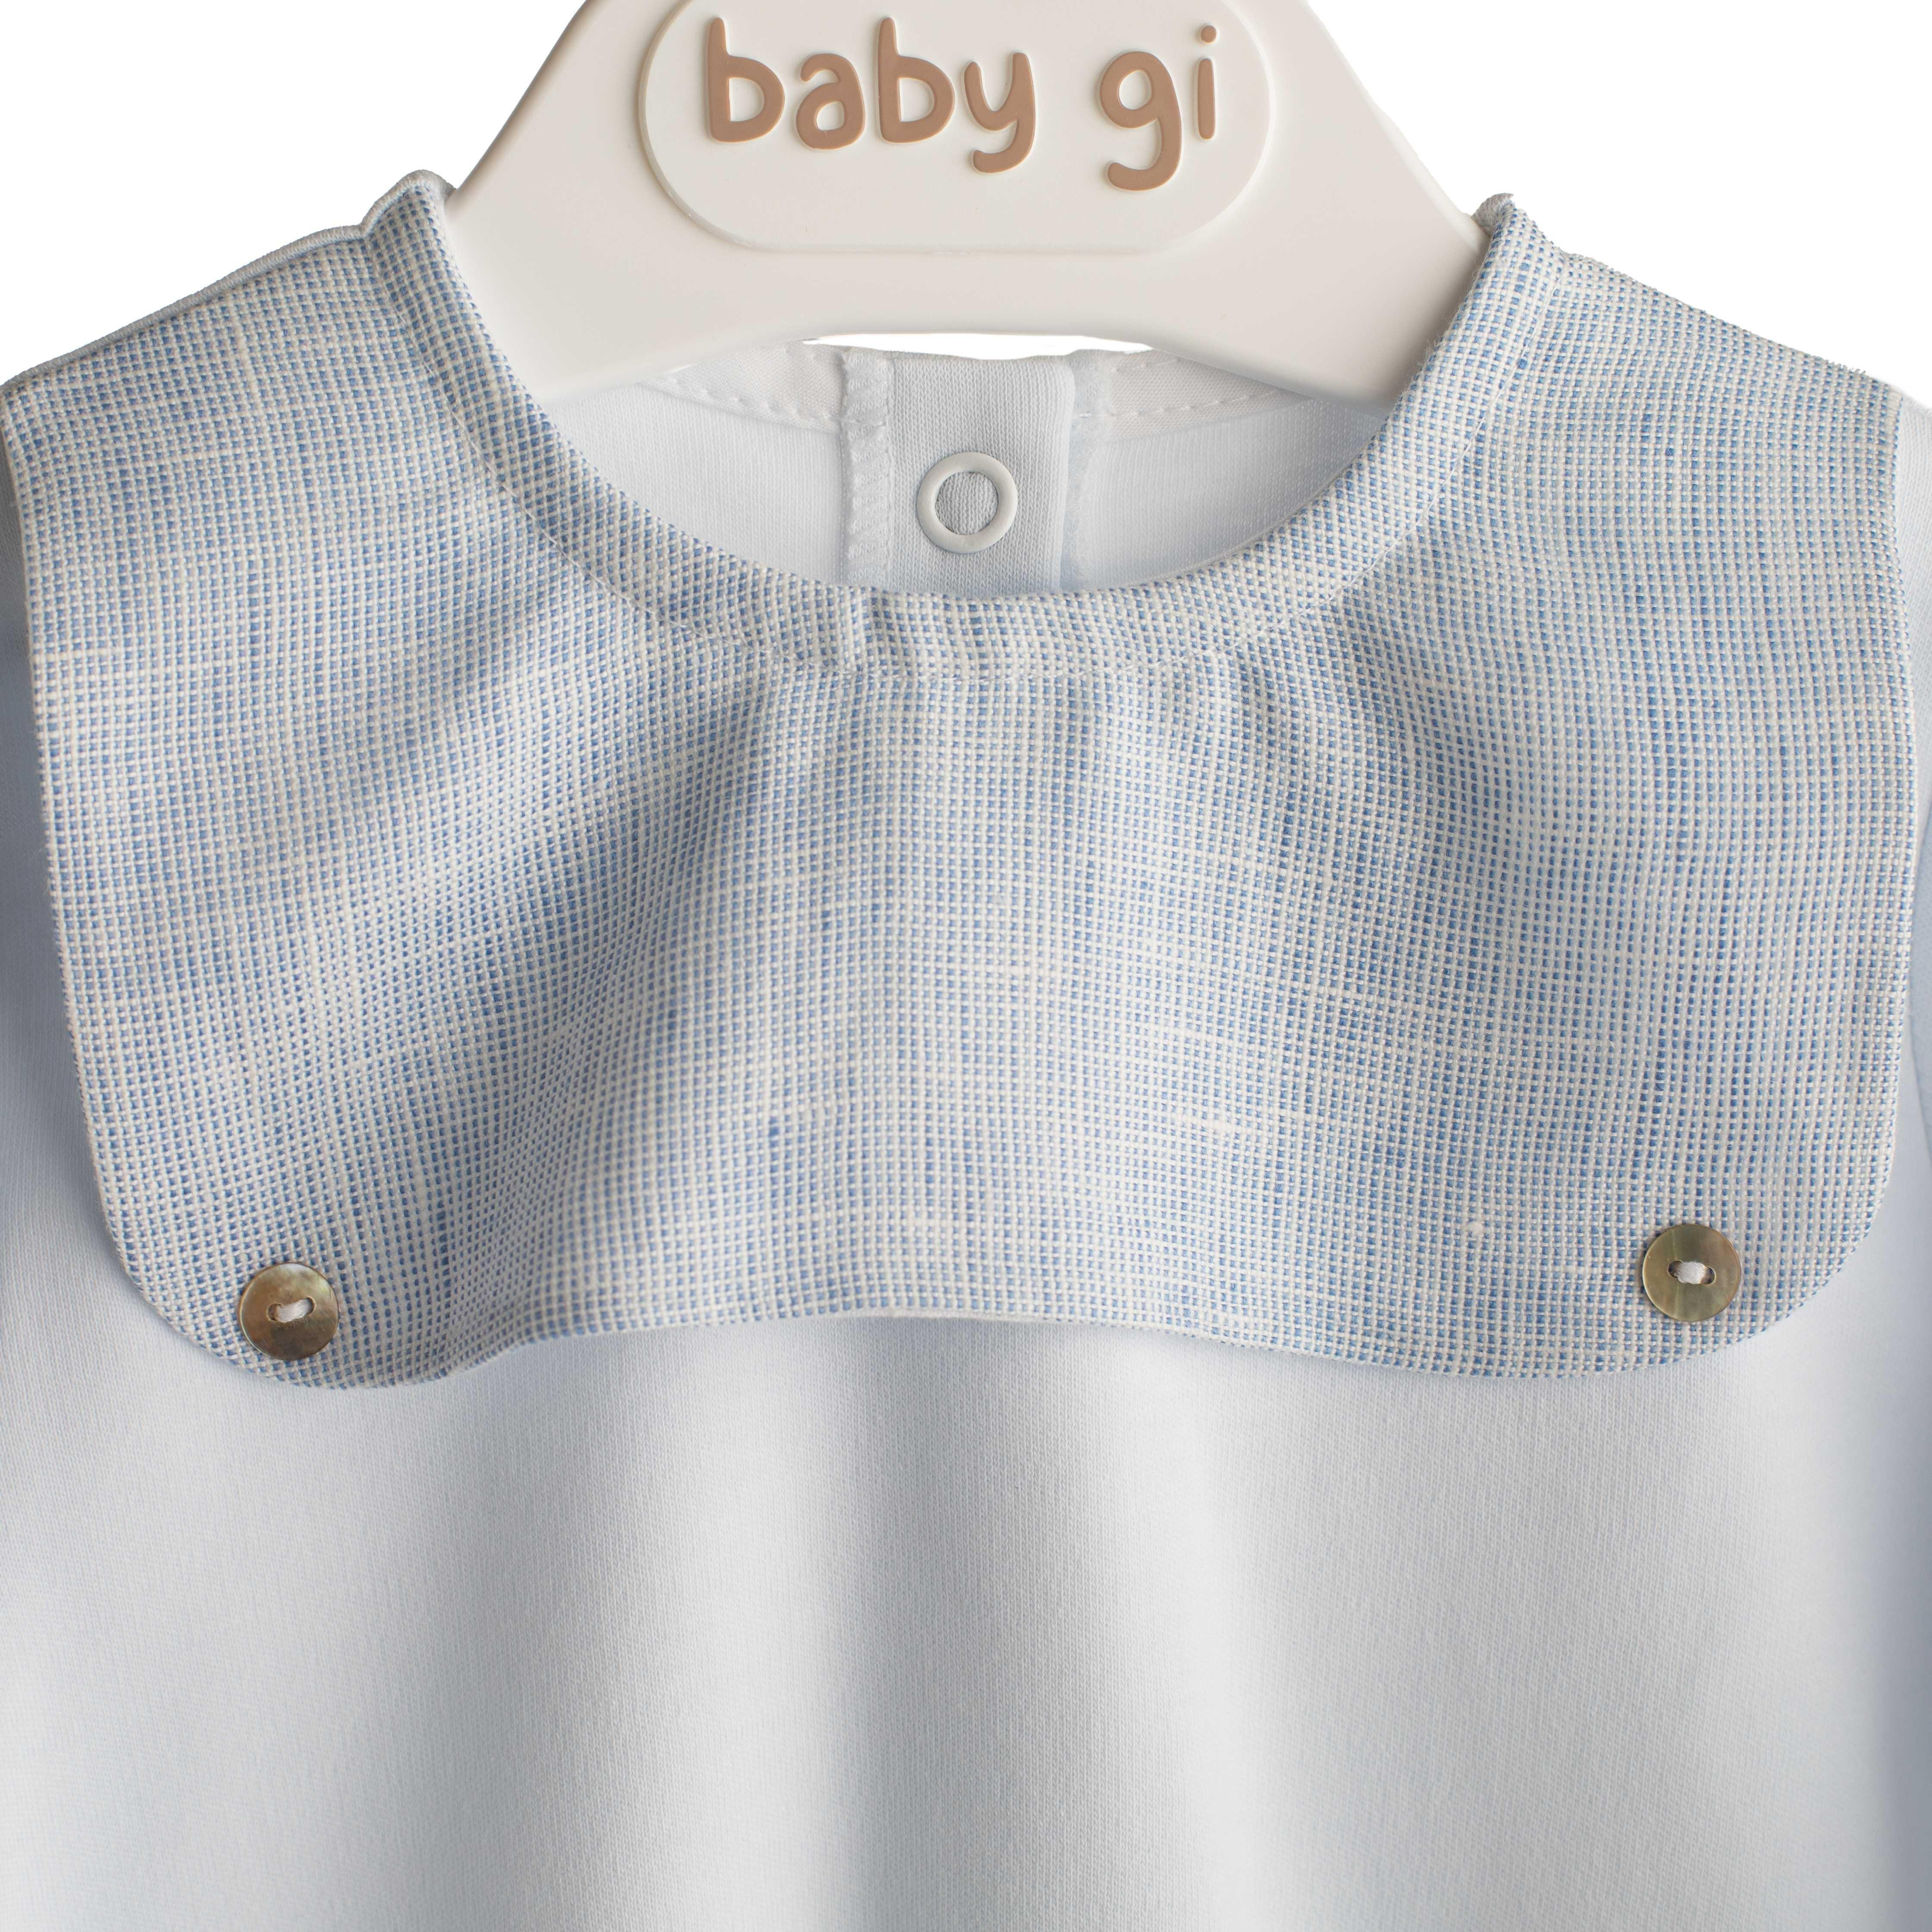 Baby Gi - Babypakje blauw linnen katoen met borst detail